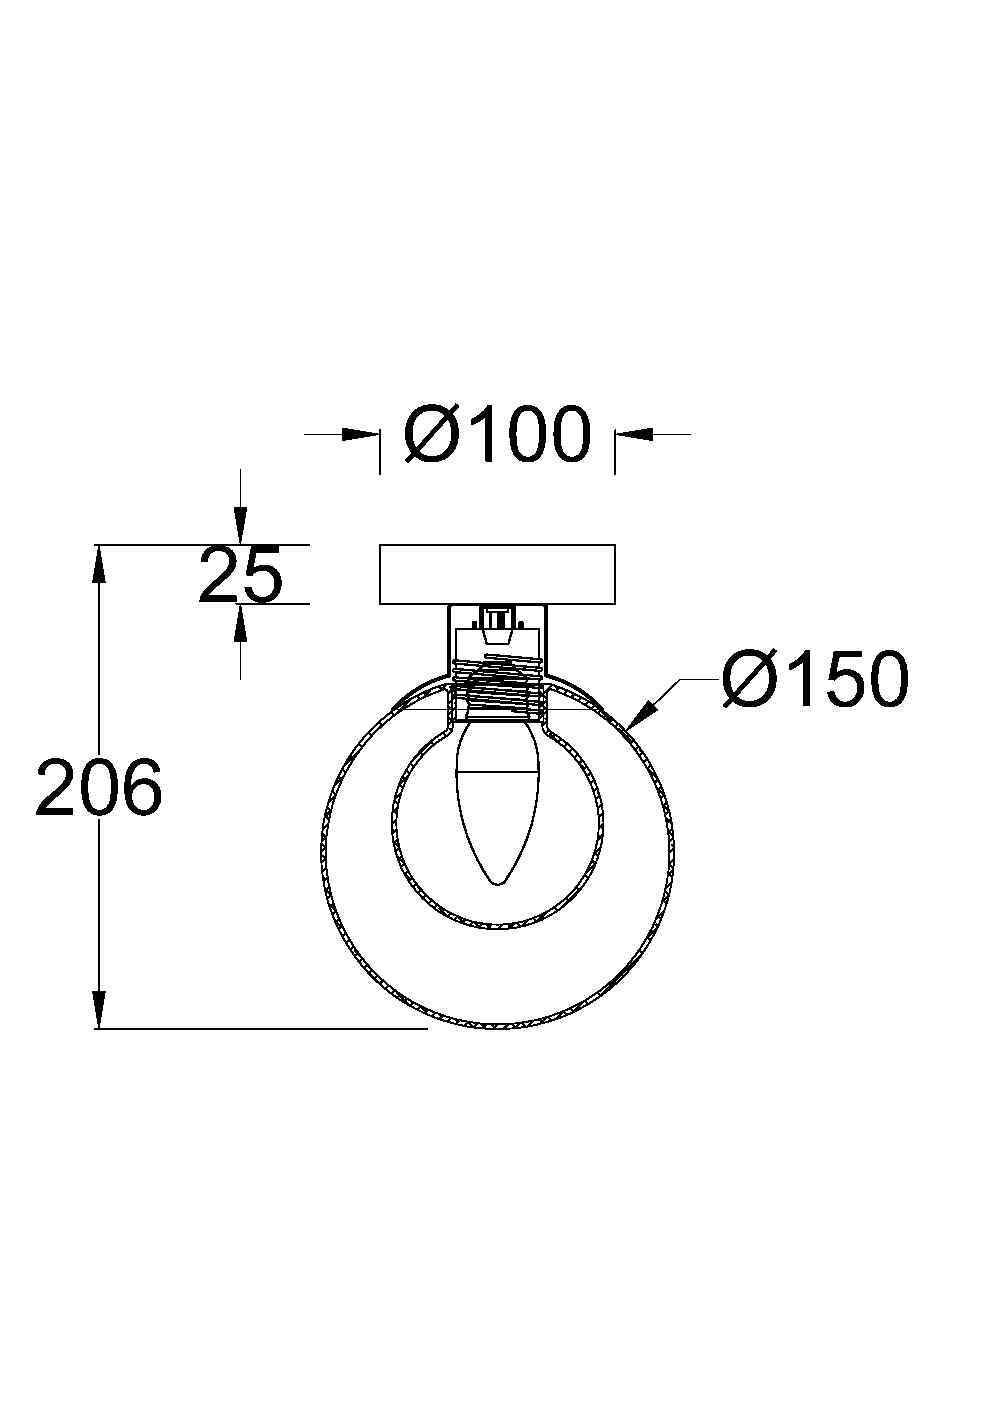 Настенный светильник (бра) Basic form Modern